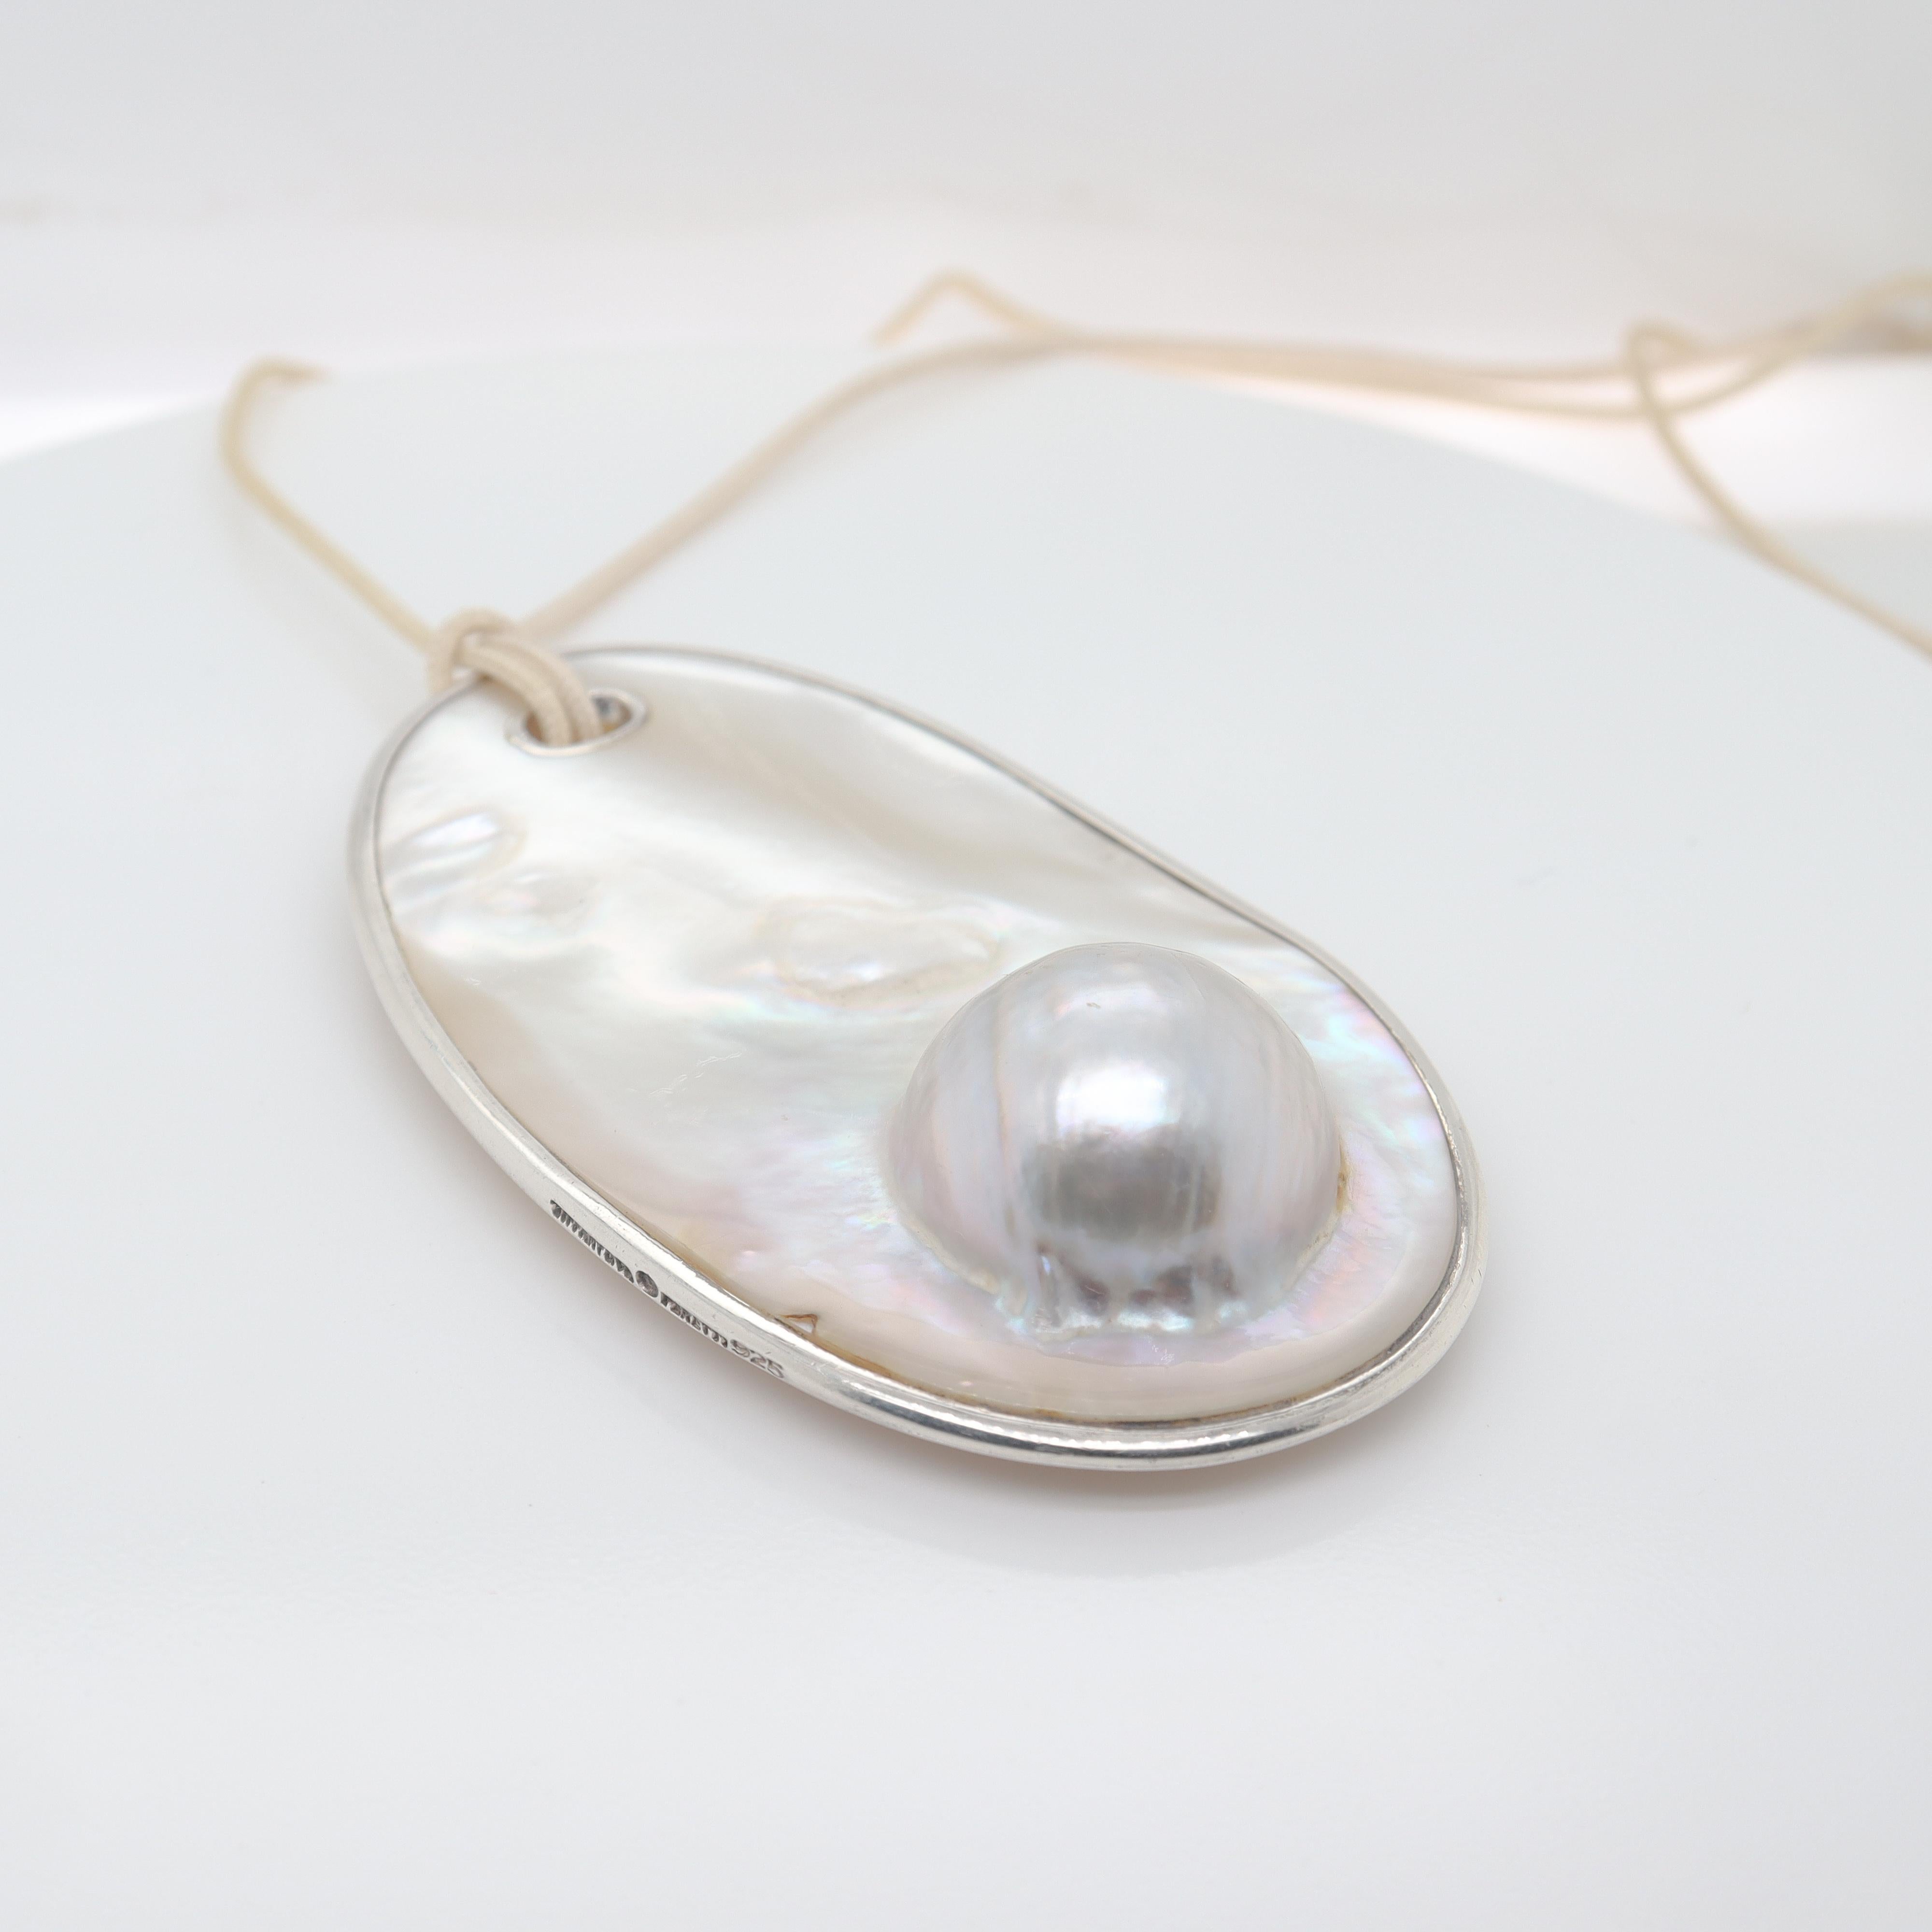 Un collier en argent fin et perles blister.

Conçu par Elsa Peretti pour Tiffany & Co. 

Composé d'un grand disque de perles blister monté sur un rebord en argent sterling et serti d'un œillet en argent. 

Ensemble, avec un cordon en nylon